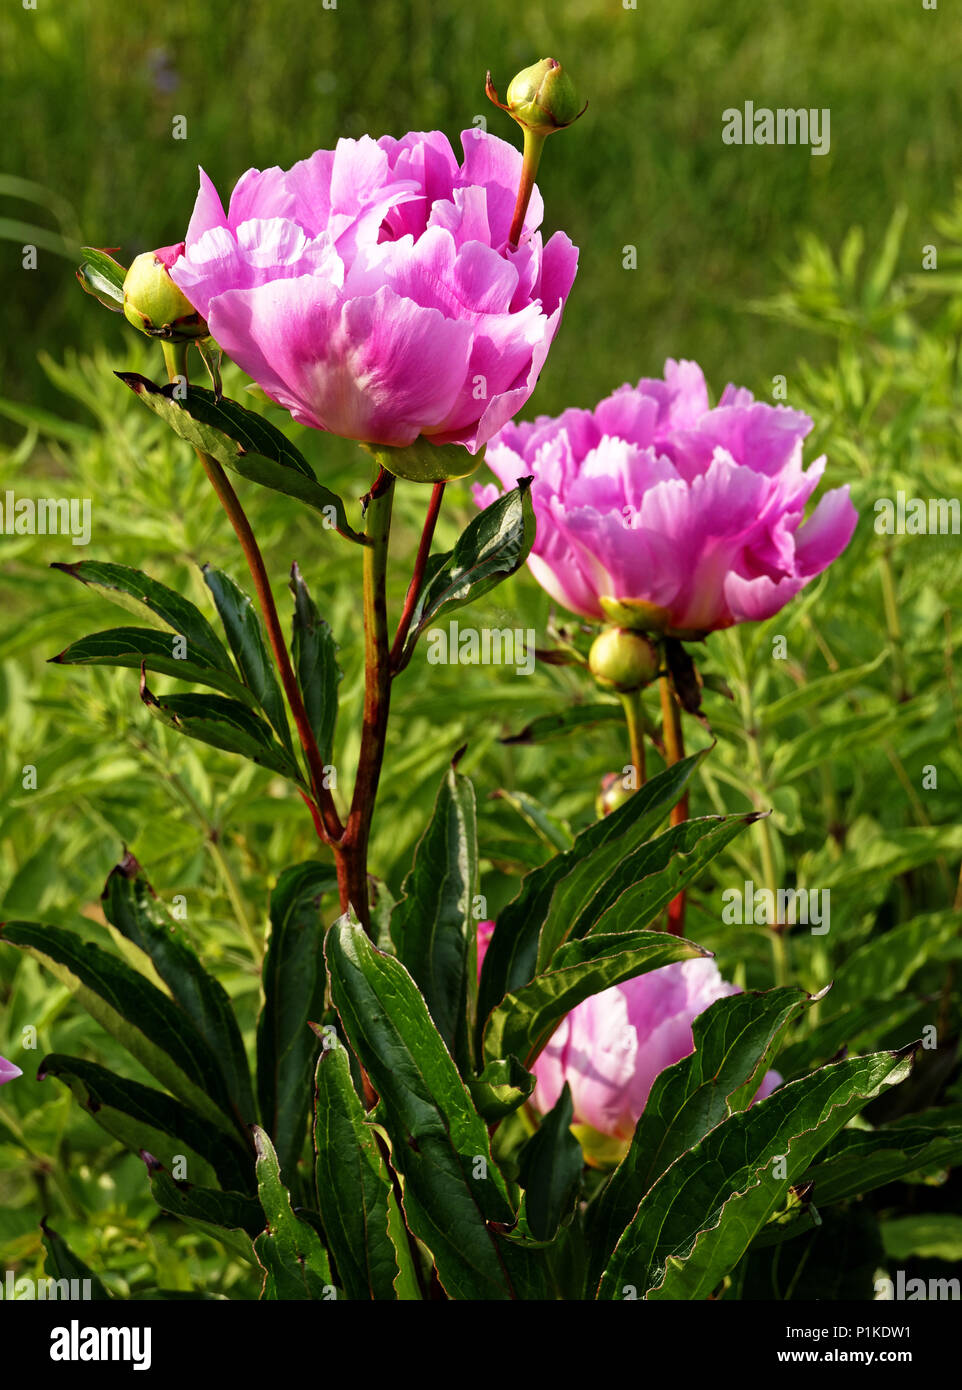 Peony flower (Paeonia lactiflora) or Chinese peony Stock Photo